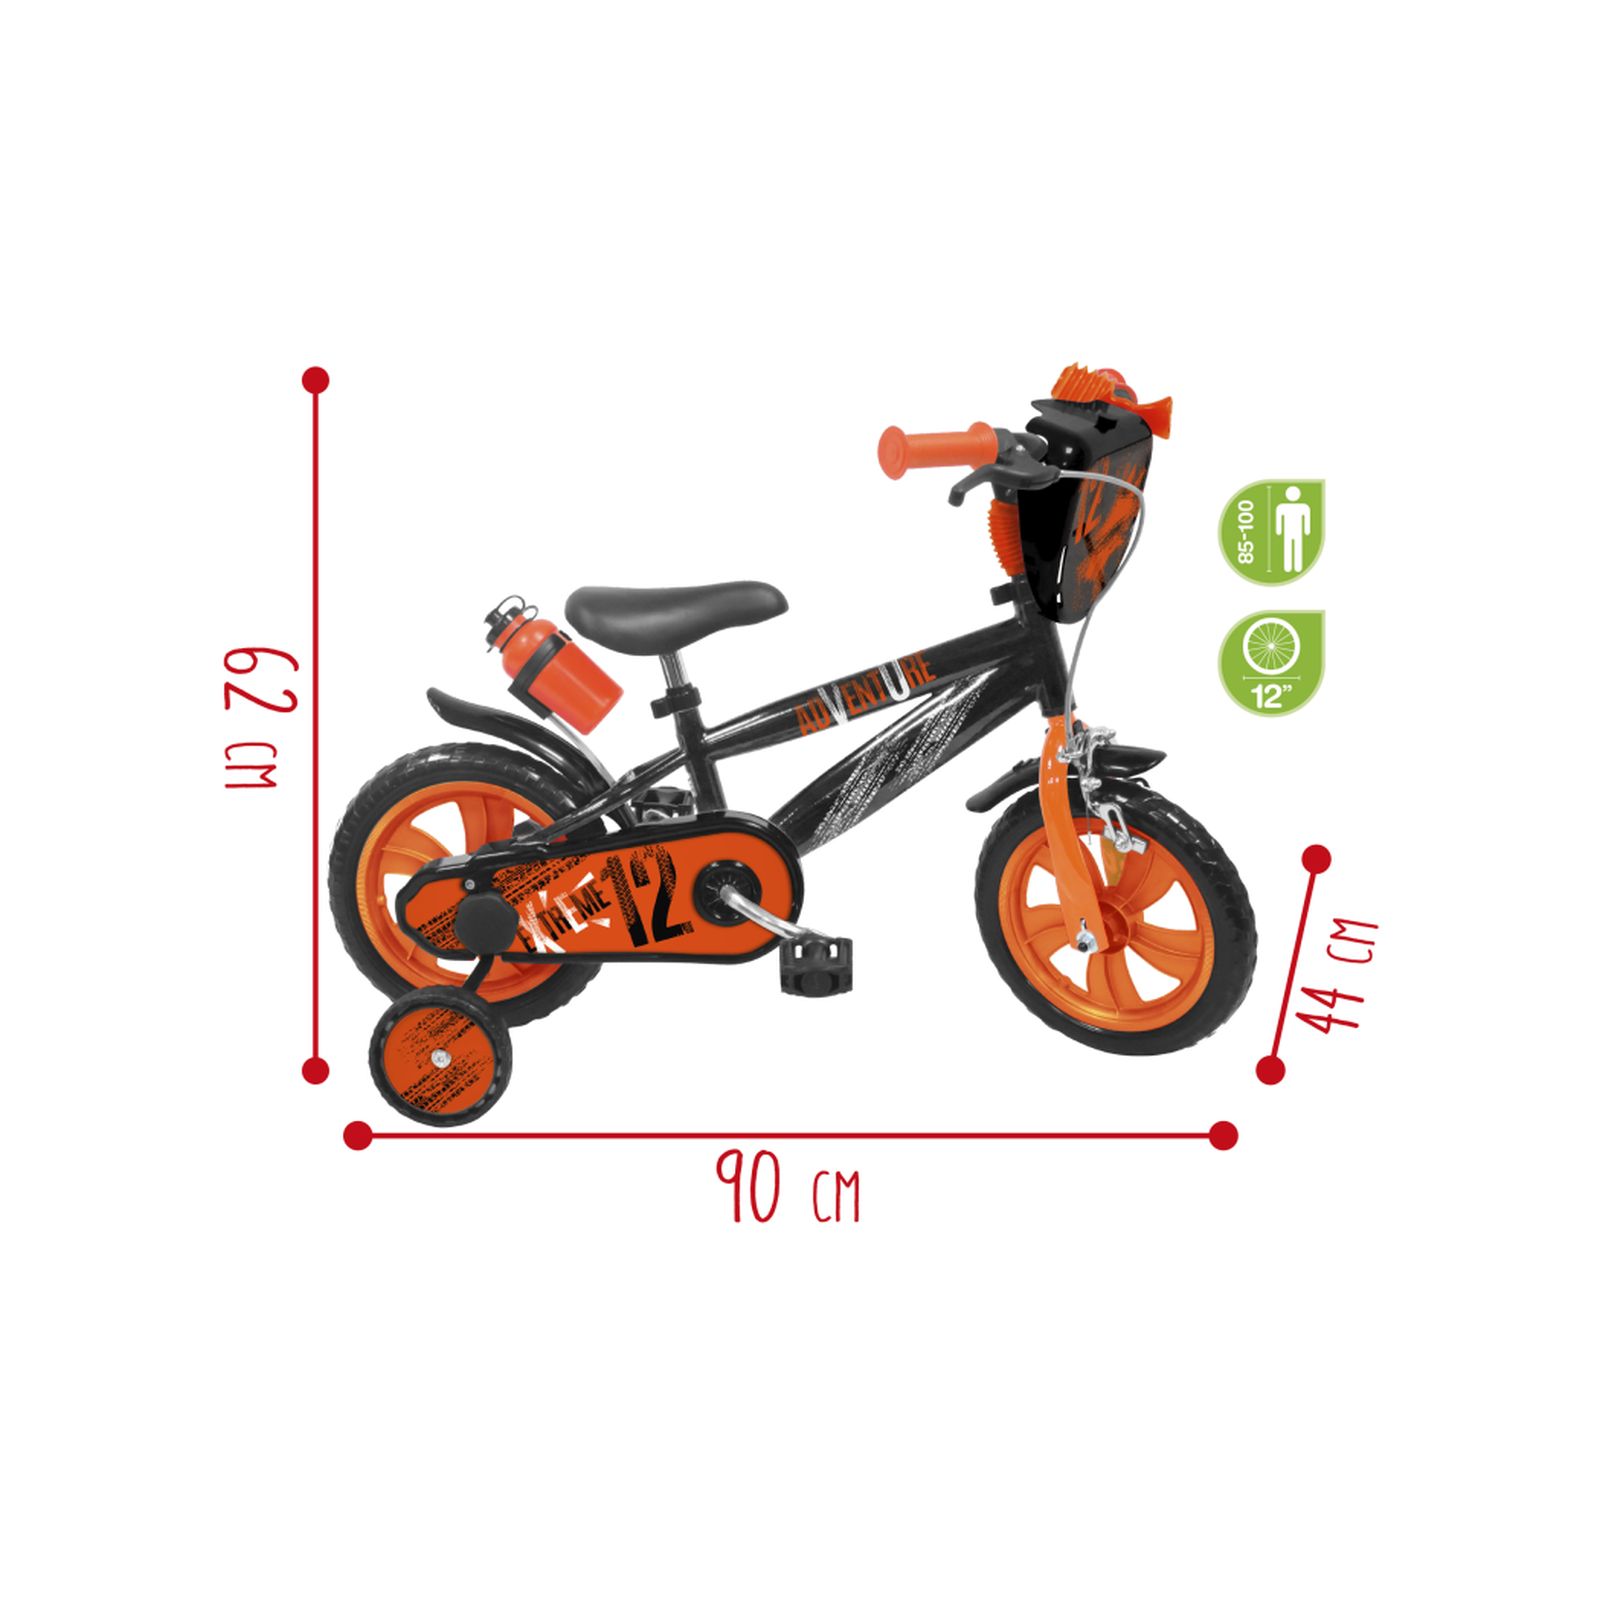 Bicicletta 12" - arancione - freno caliper frontale - borraccia e mascherina frontale incluse - adatta per  bambini dai 3-5 anni - SUN&SPORT